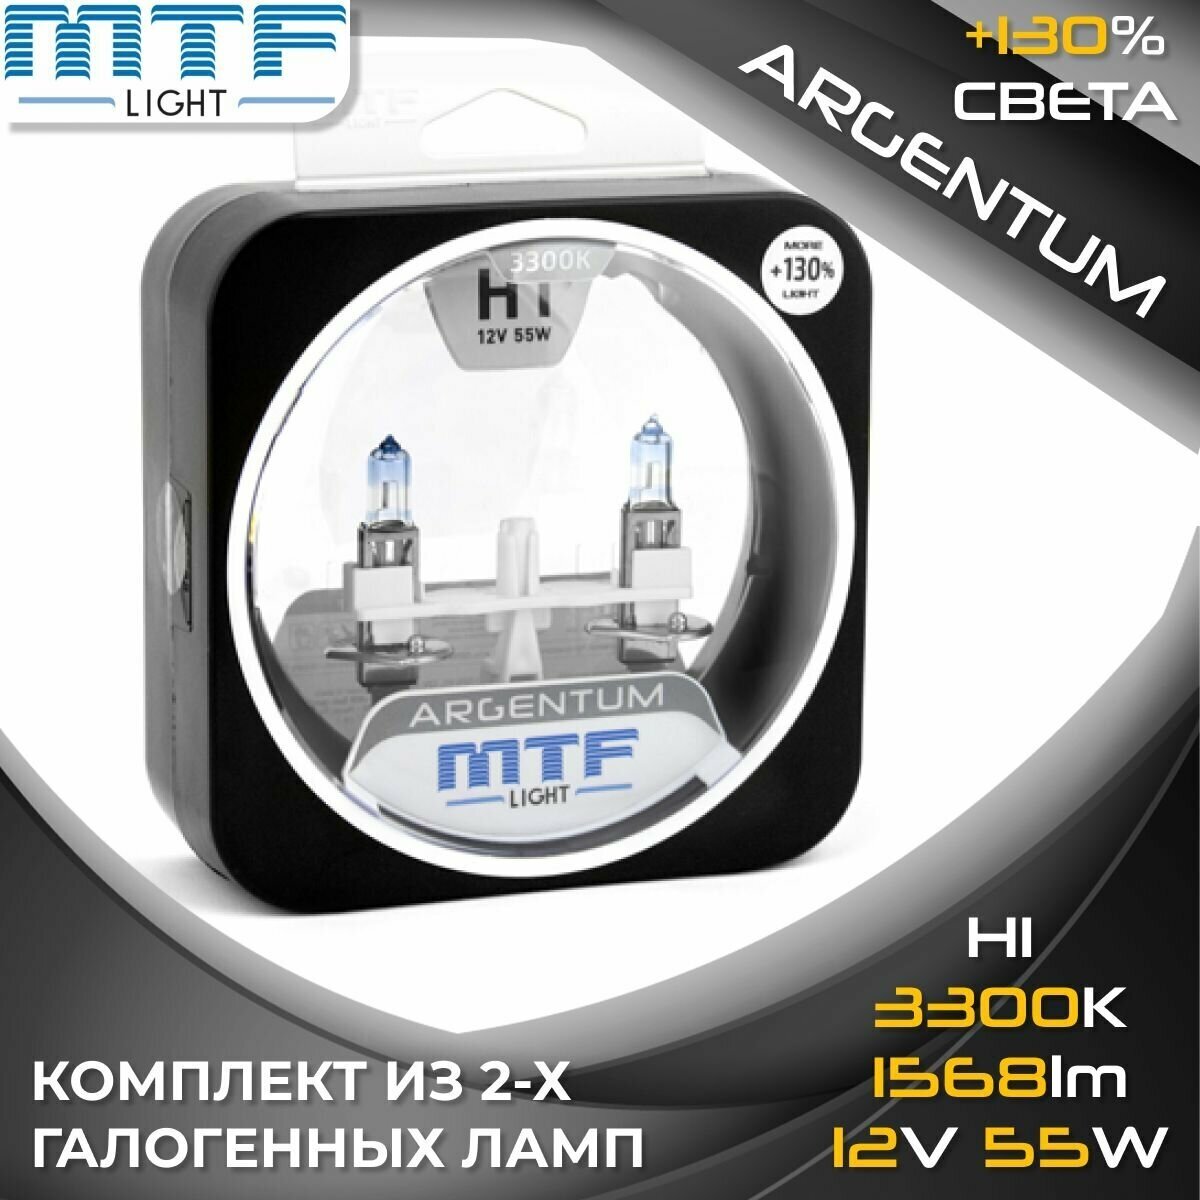 Галогенные автолампы MTF Light серия ARGENTUM +130% H1 12V 55W (комплект 2 шт.)